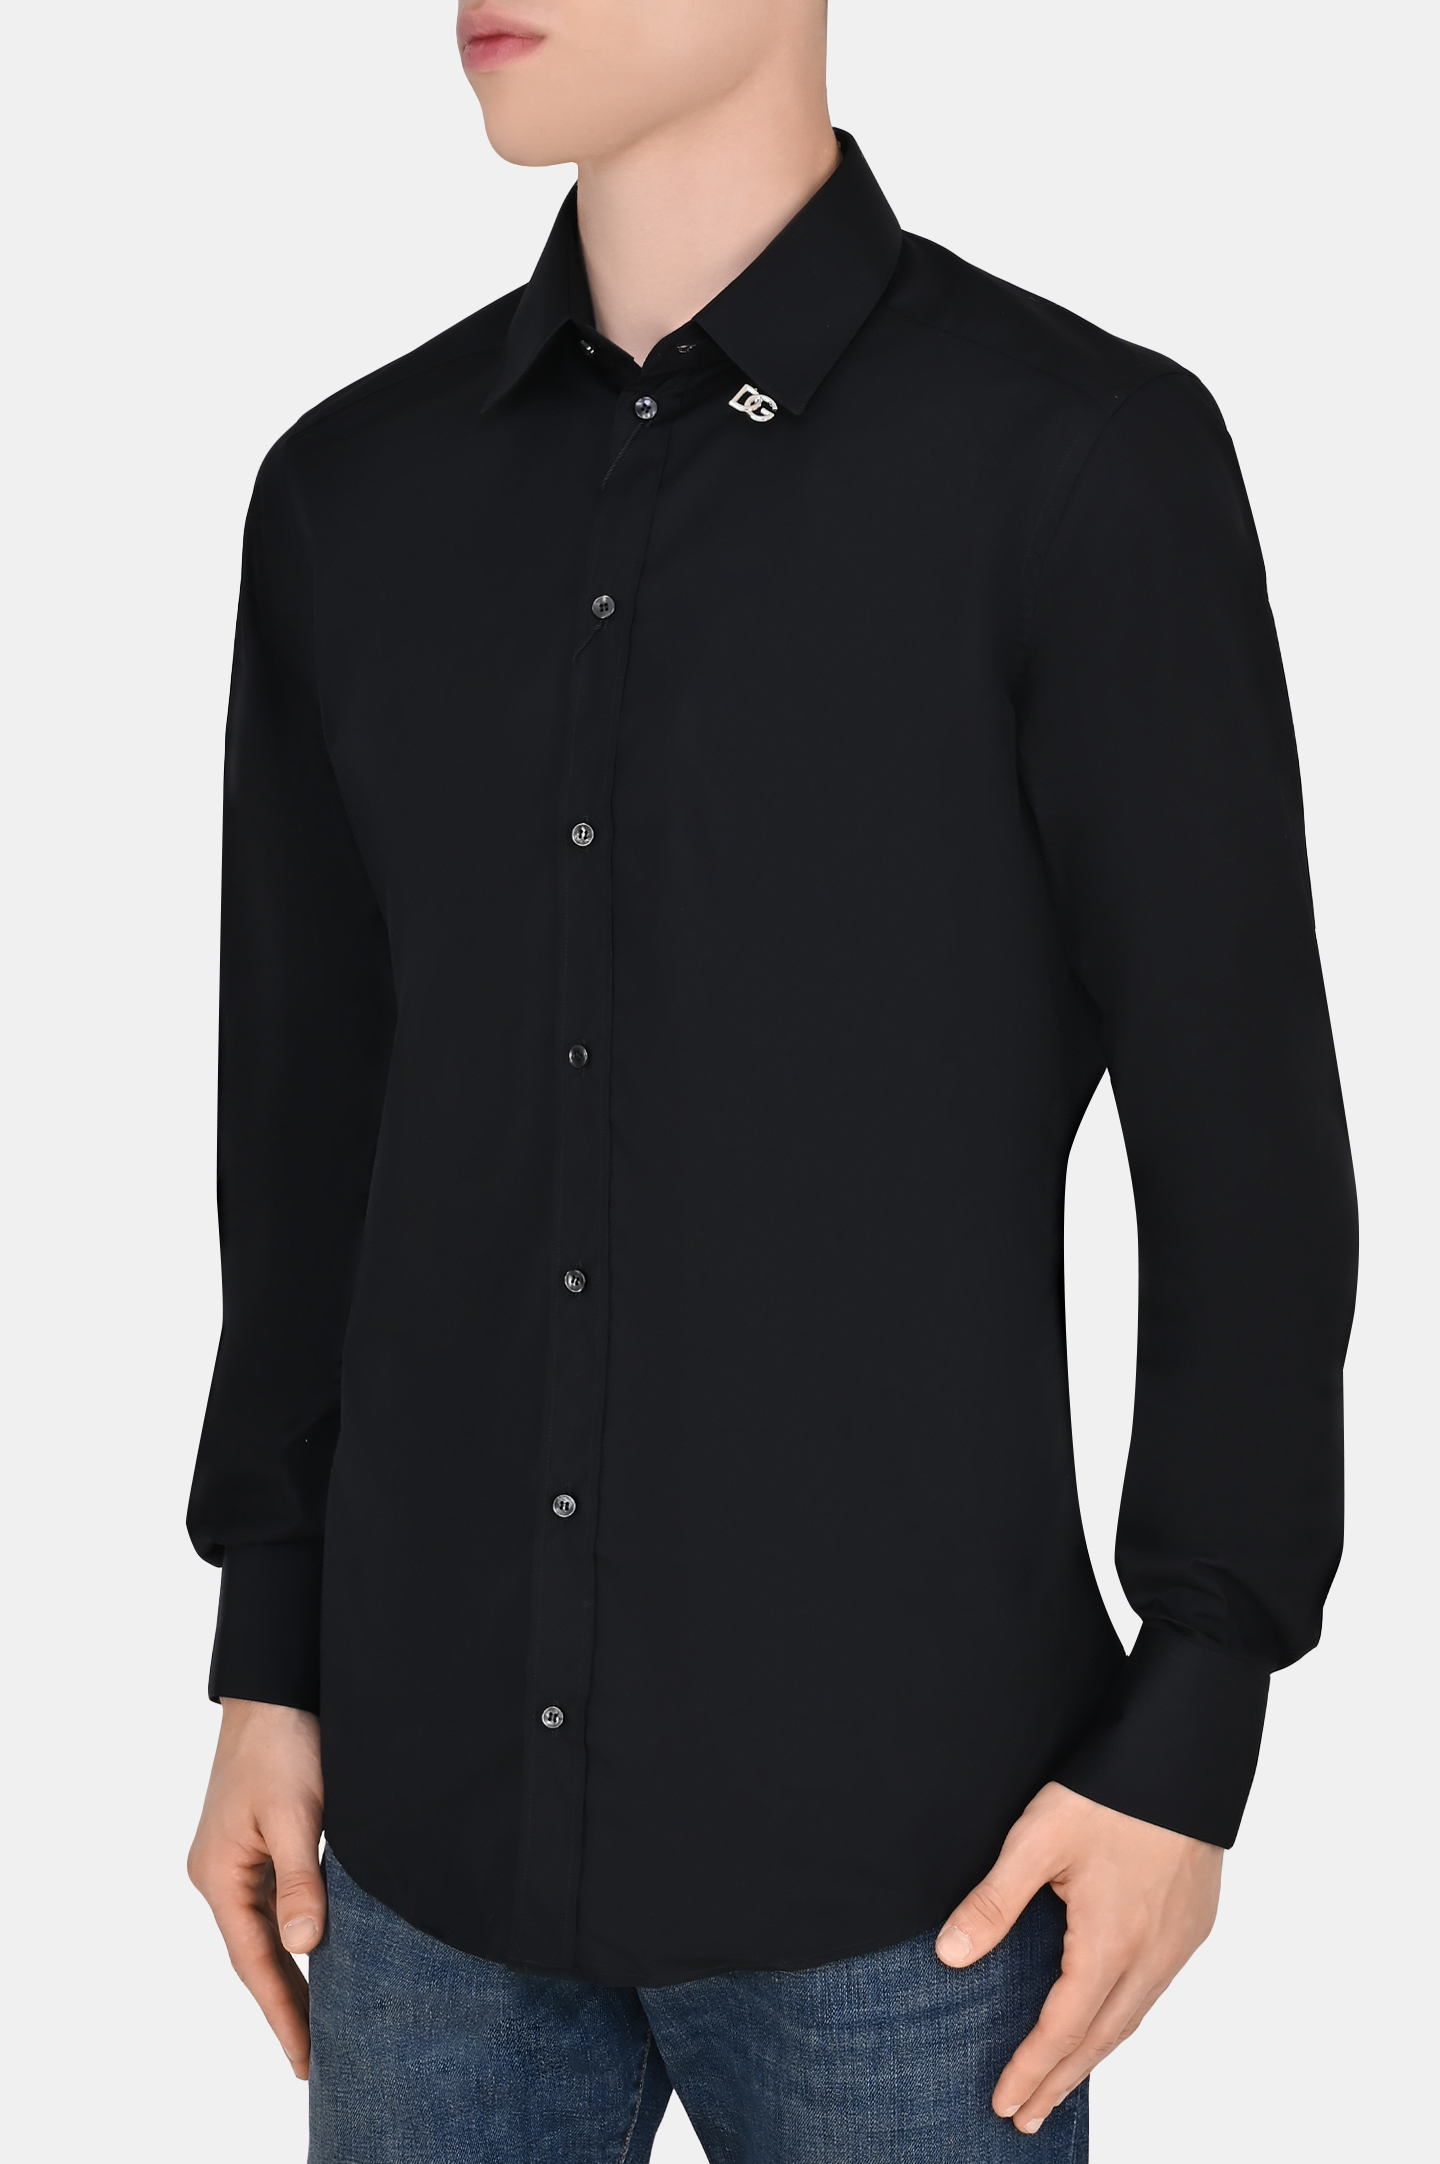 Рубашка DOLCE & GABBANA G5EJ0T GF114, цвет: Черный, Мужской